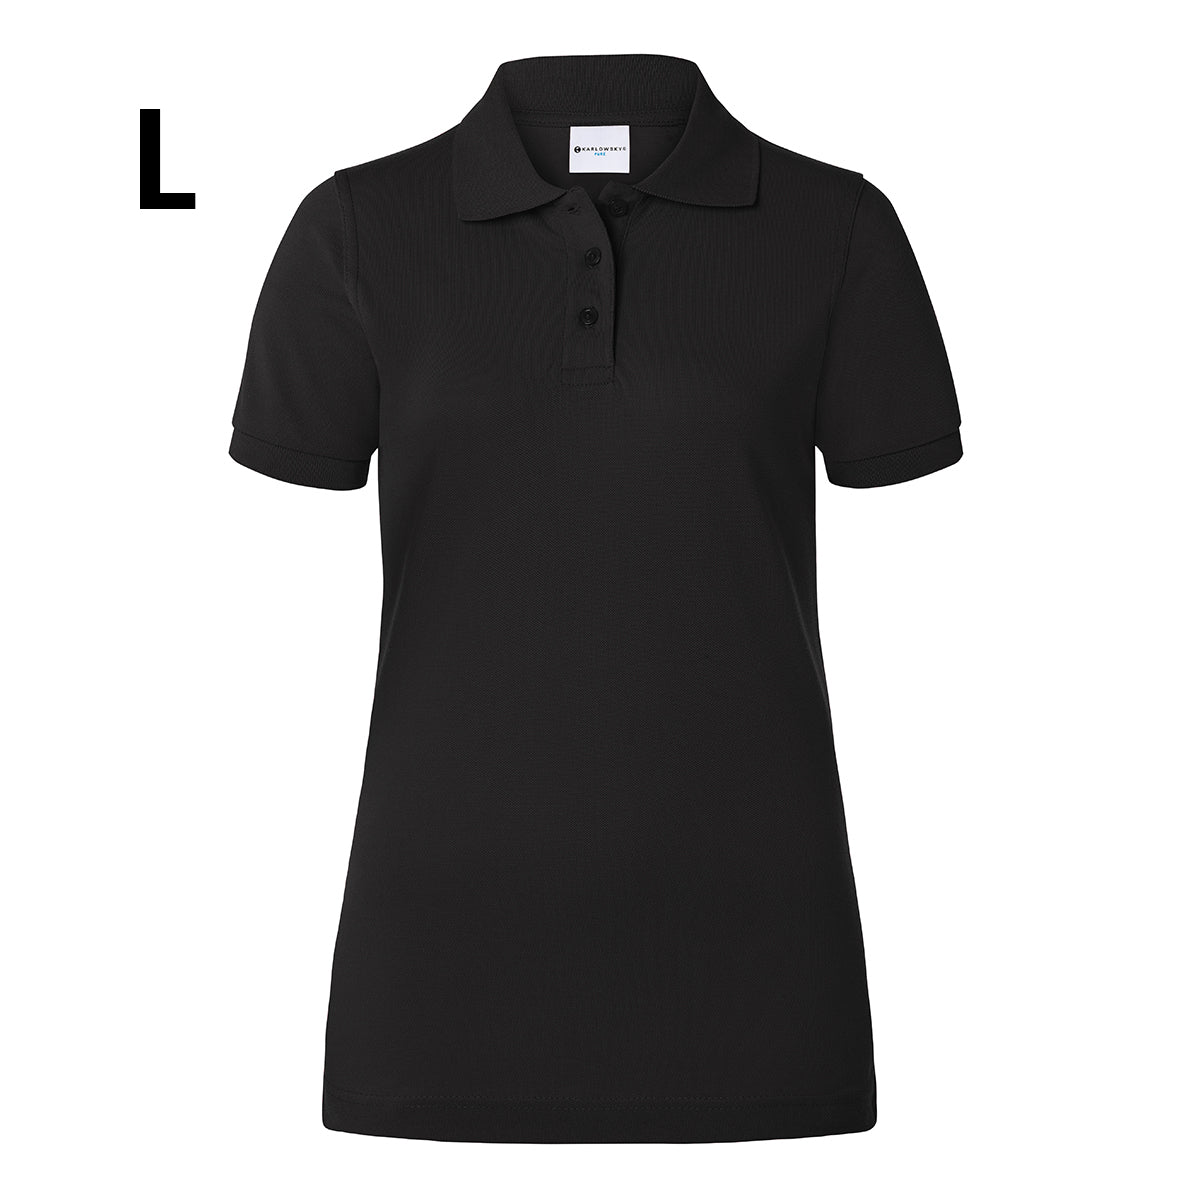 Karlowsky - Arbejdsbeklædning Basic Poloshirt til damer - Sort - Størrelse: L